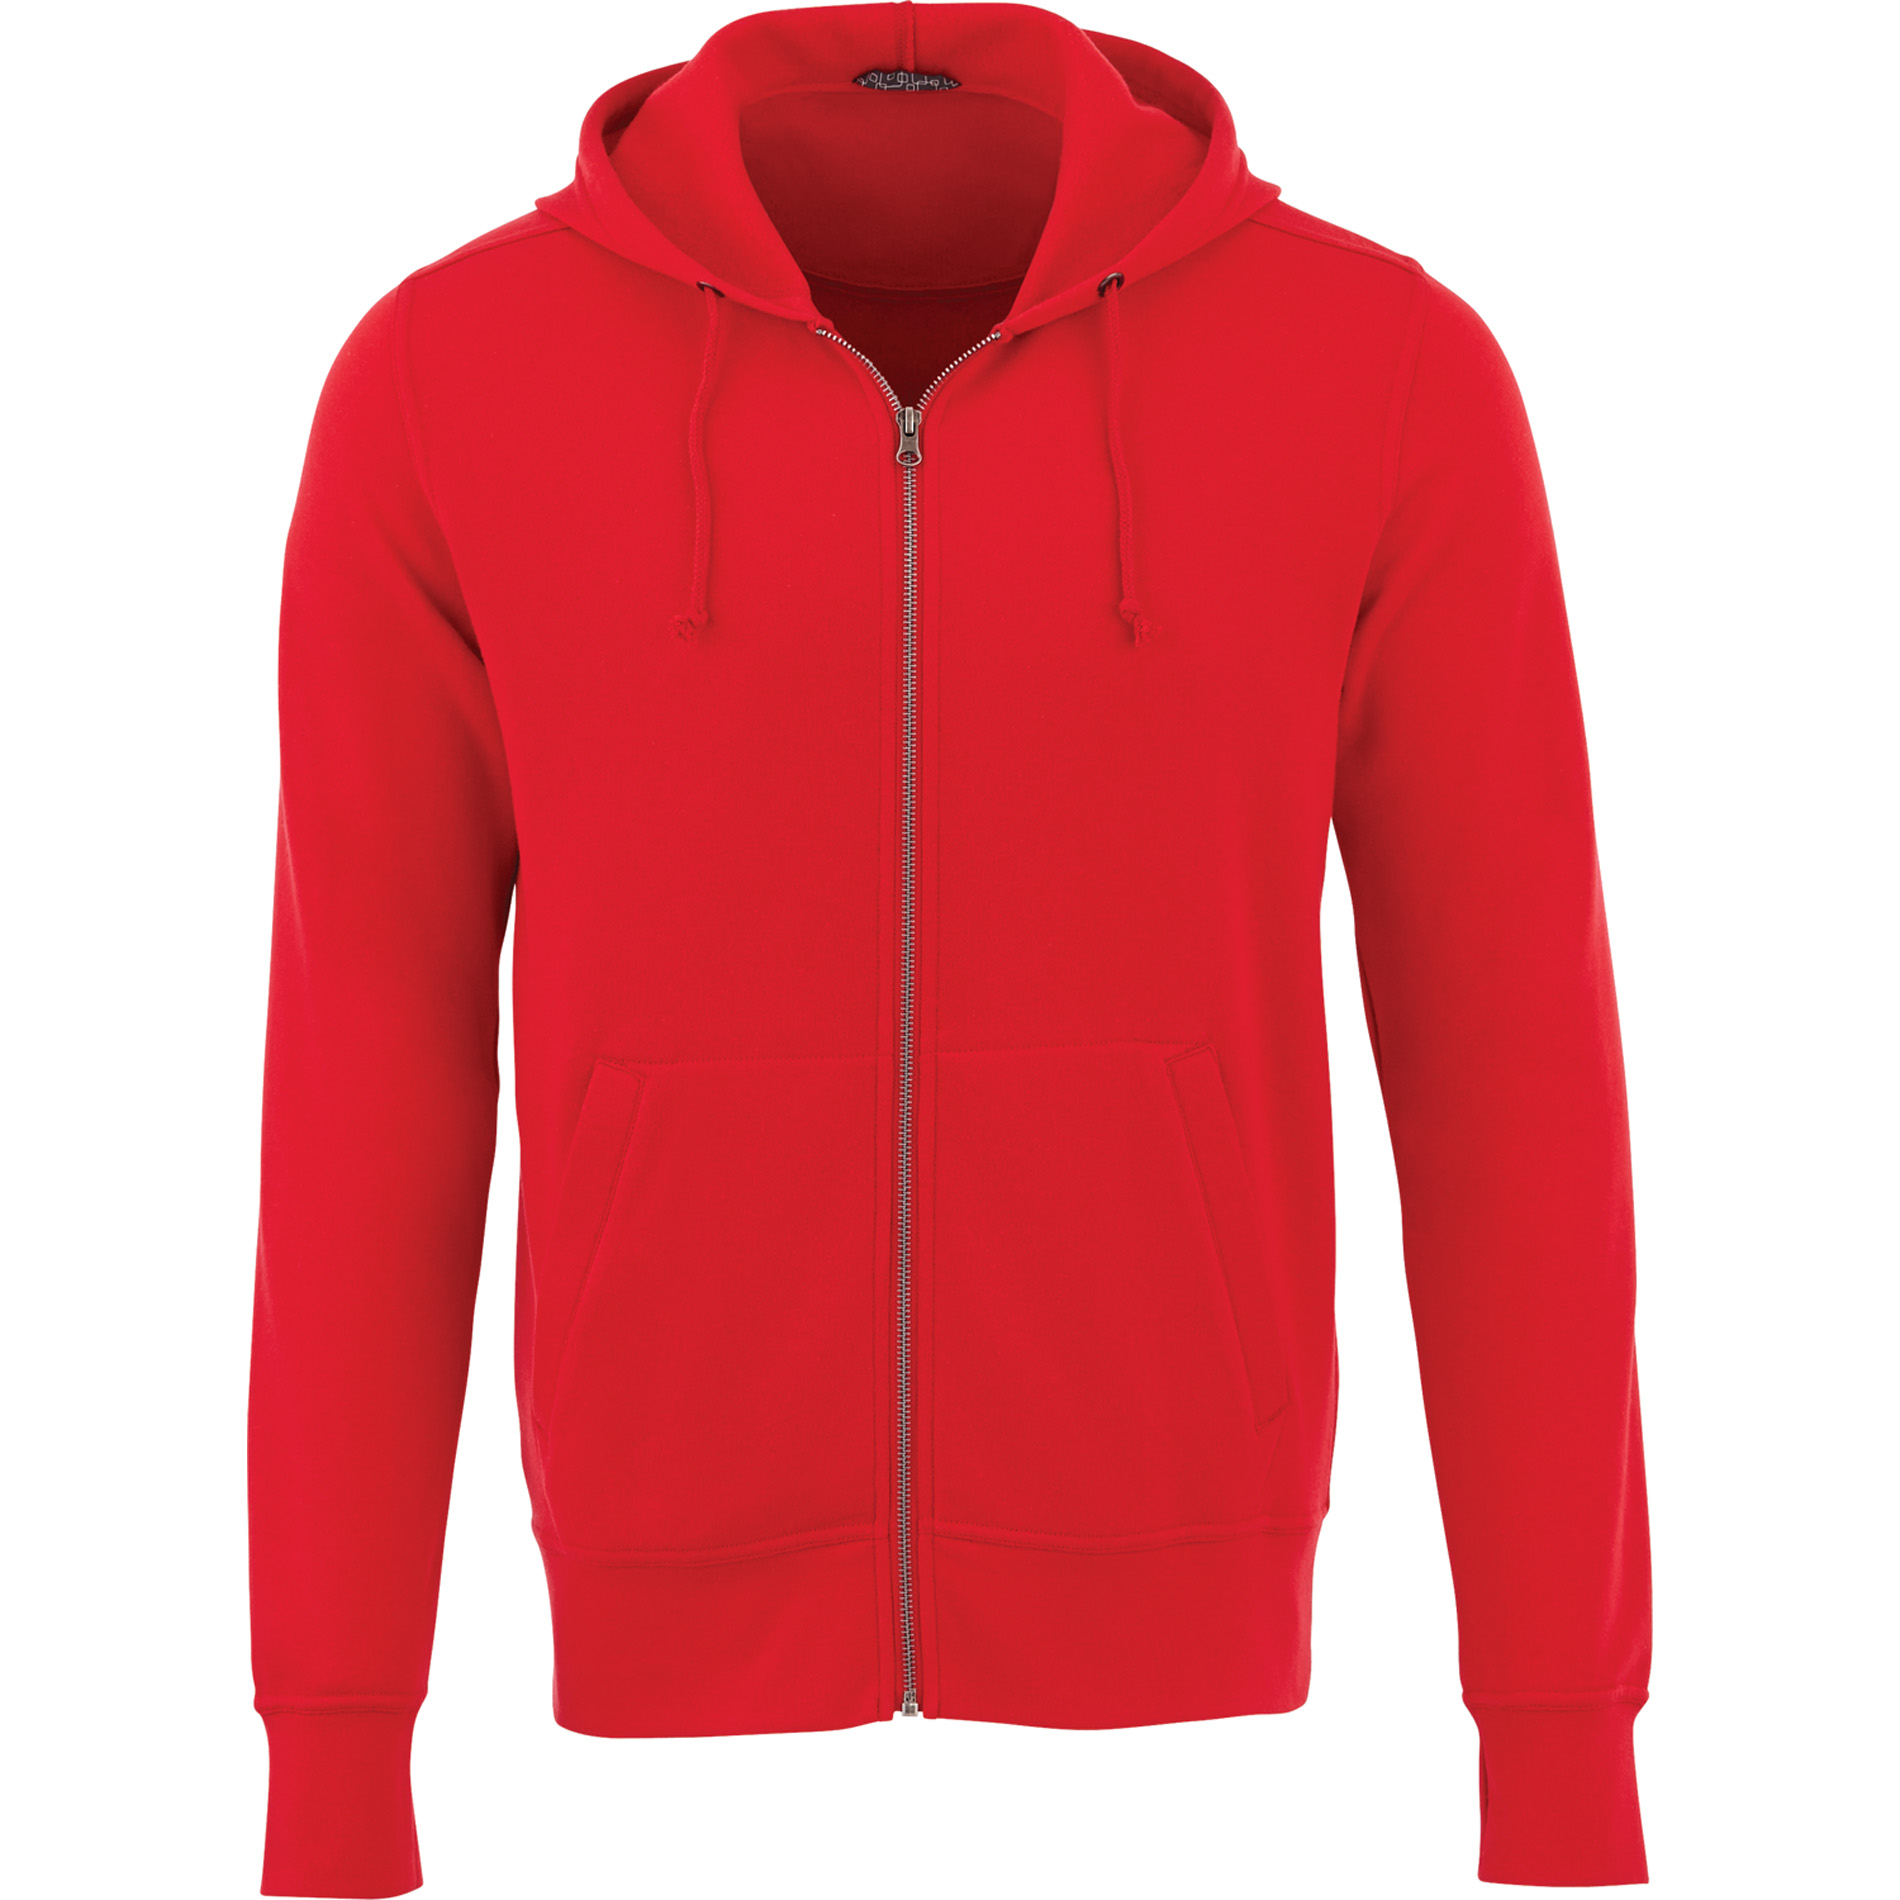 Elevate TM18135 - Men's CYPRESS Fleece Zip Hoodie $22.57 - Sweatshirts